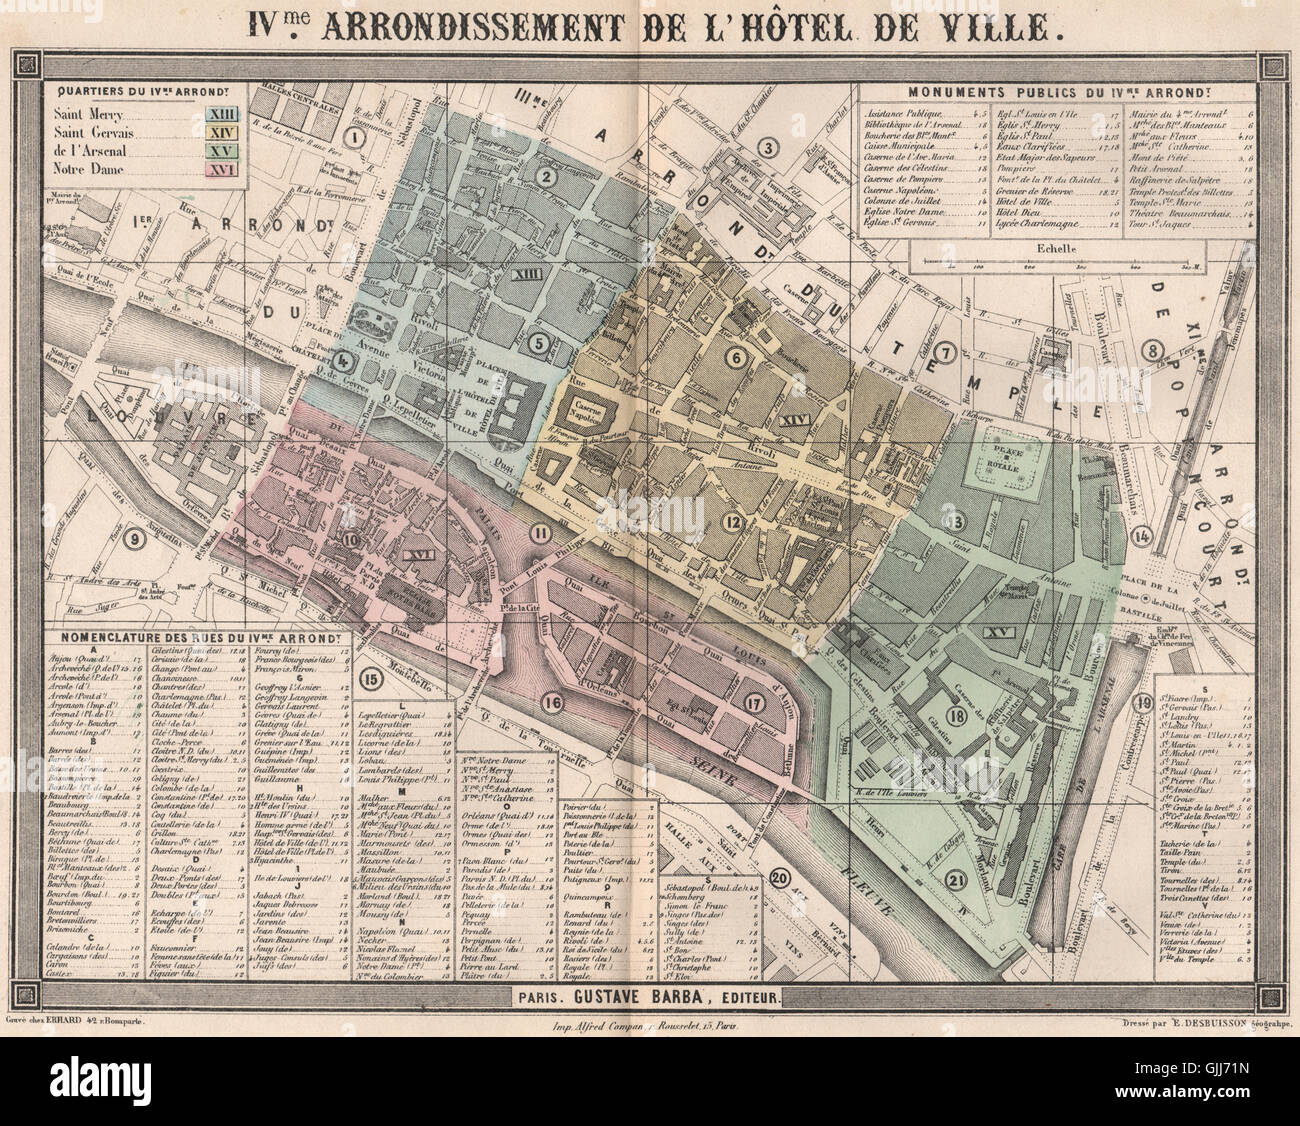 PARIS 4e 4th IVme arrondissement de l'Hôtel de Ville. BARBA, 1860 antique map Stock Photo